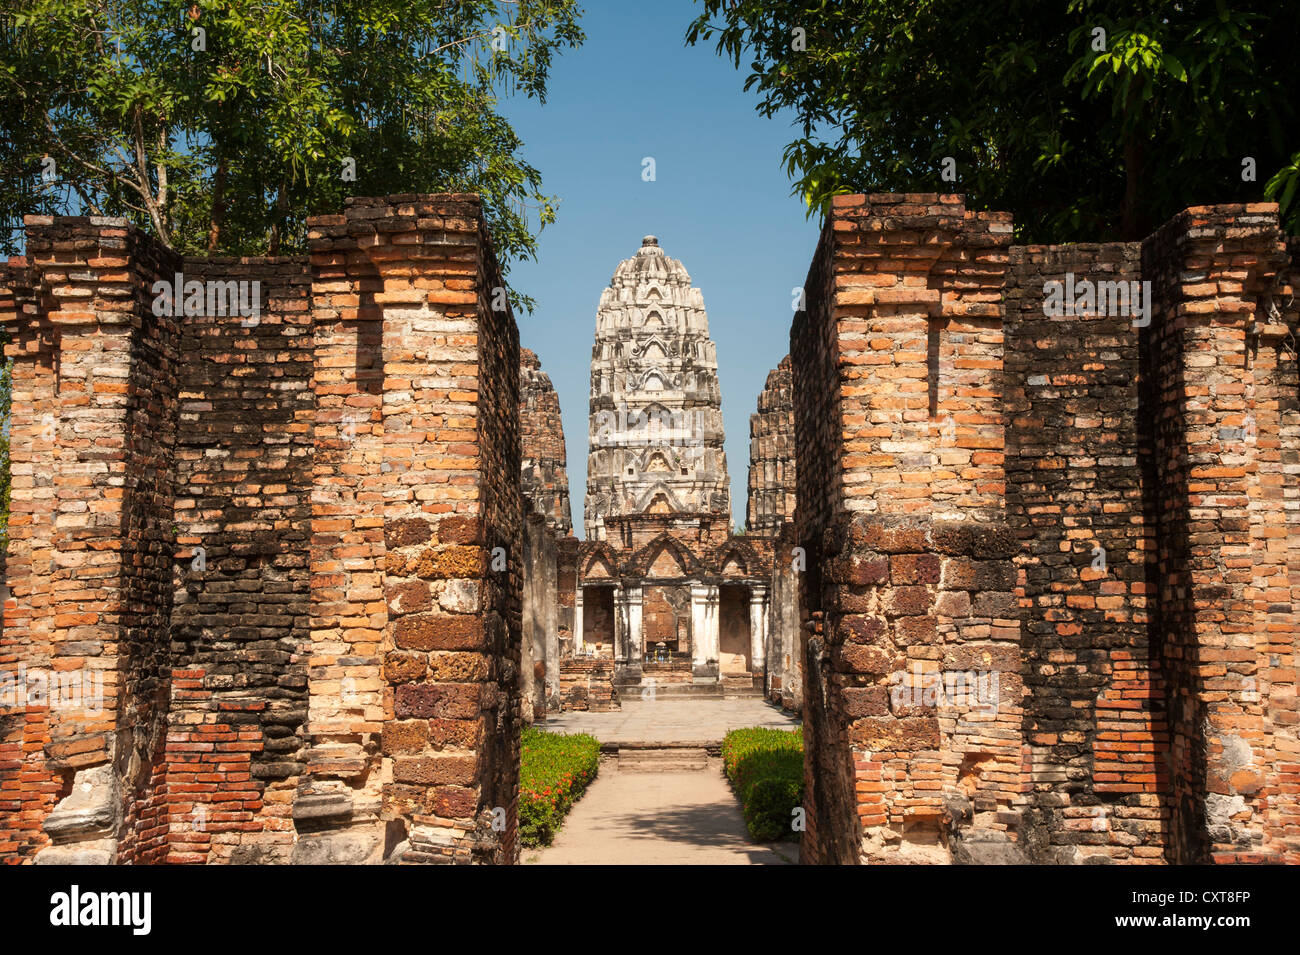 Wat Sri Sawai temple, Parc historique de Sukhothaï, Site du patrimoine mondial de l'UNESCO, dans le Nord de la Thaïlande, la Thaïlande, l'Asie Banque D'Images